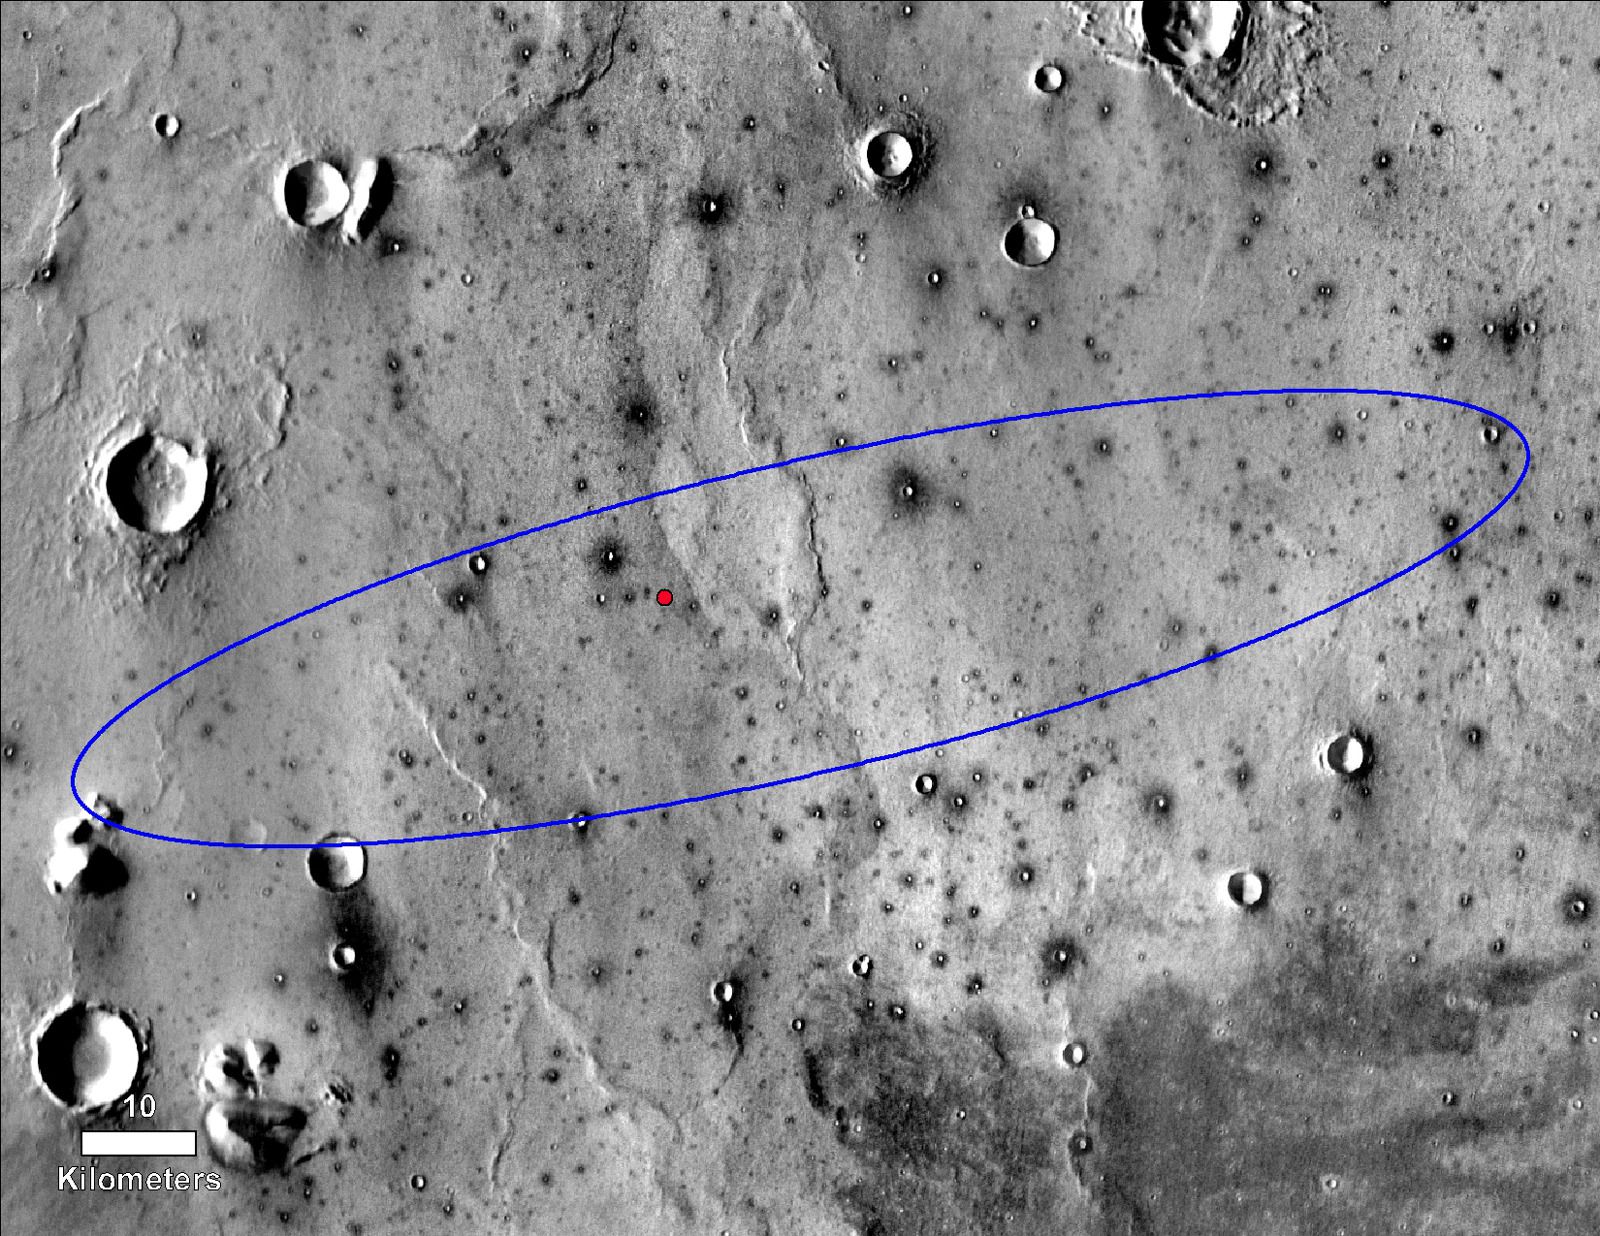 Місцерозташування зонду InSight розгледіли з орбіти. Орбітальний апарат Mars Reconnaissance Orbiter зміг сфотографувати посадочну платформу місії InSight, теплозахисний екран і парашут.